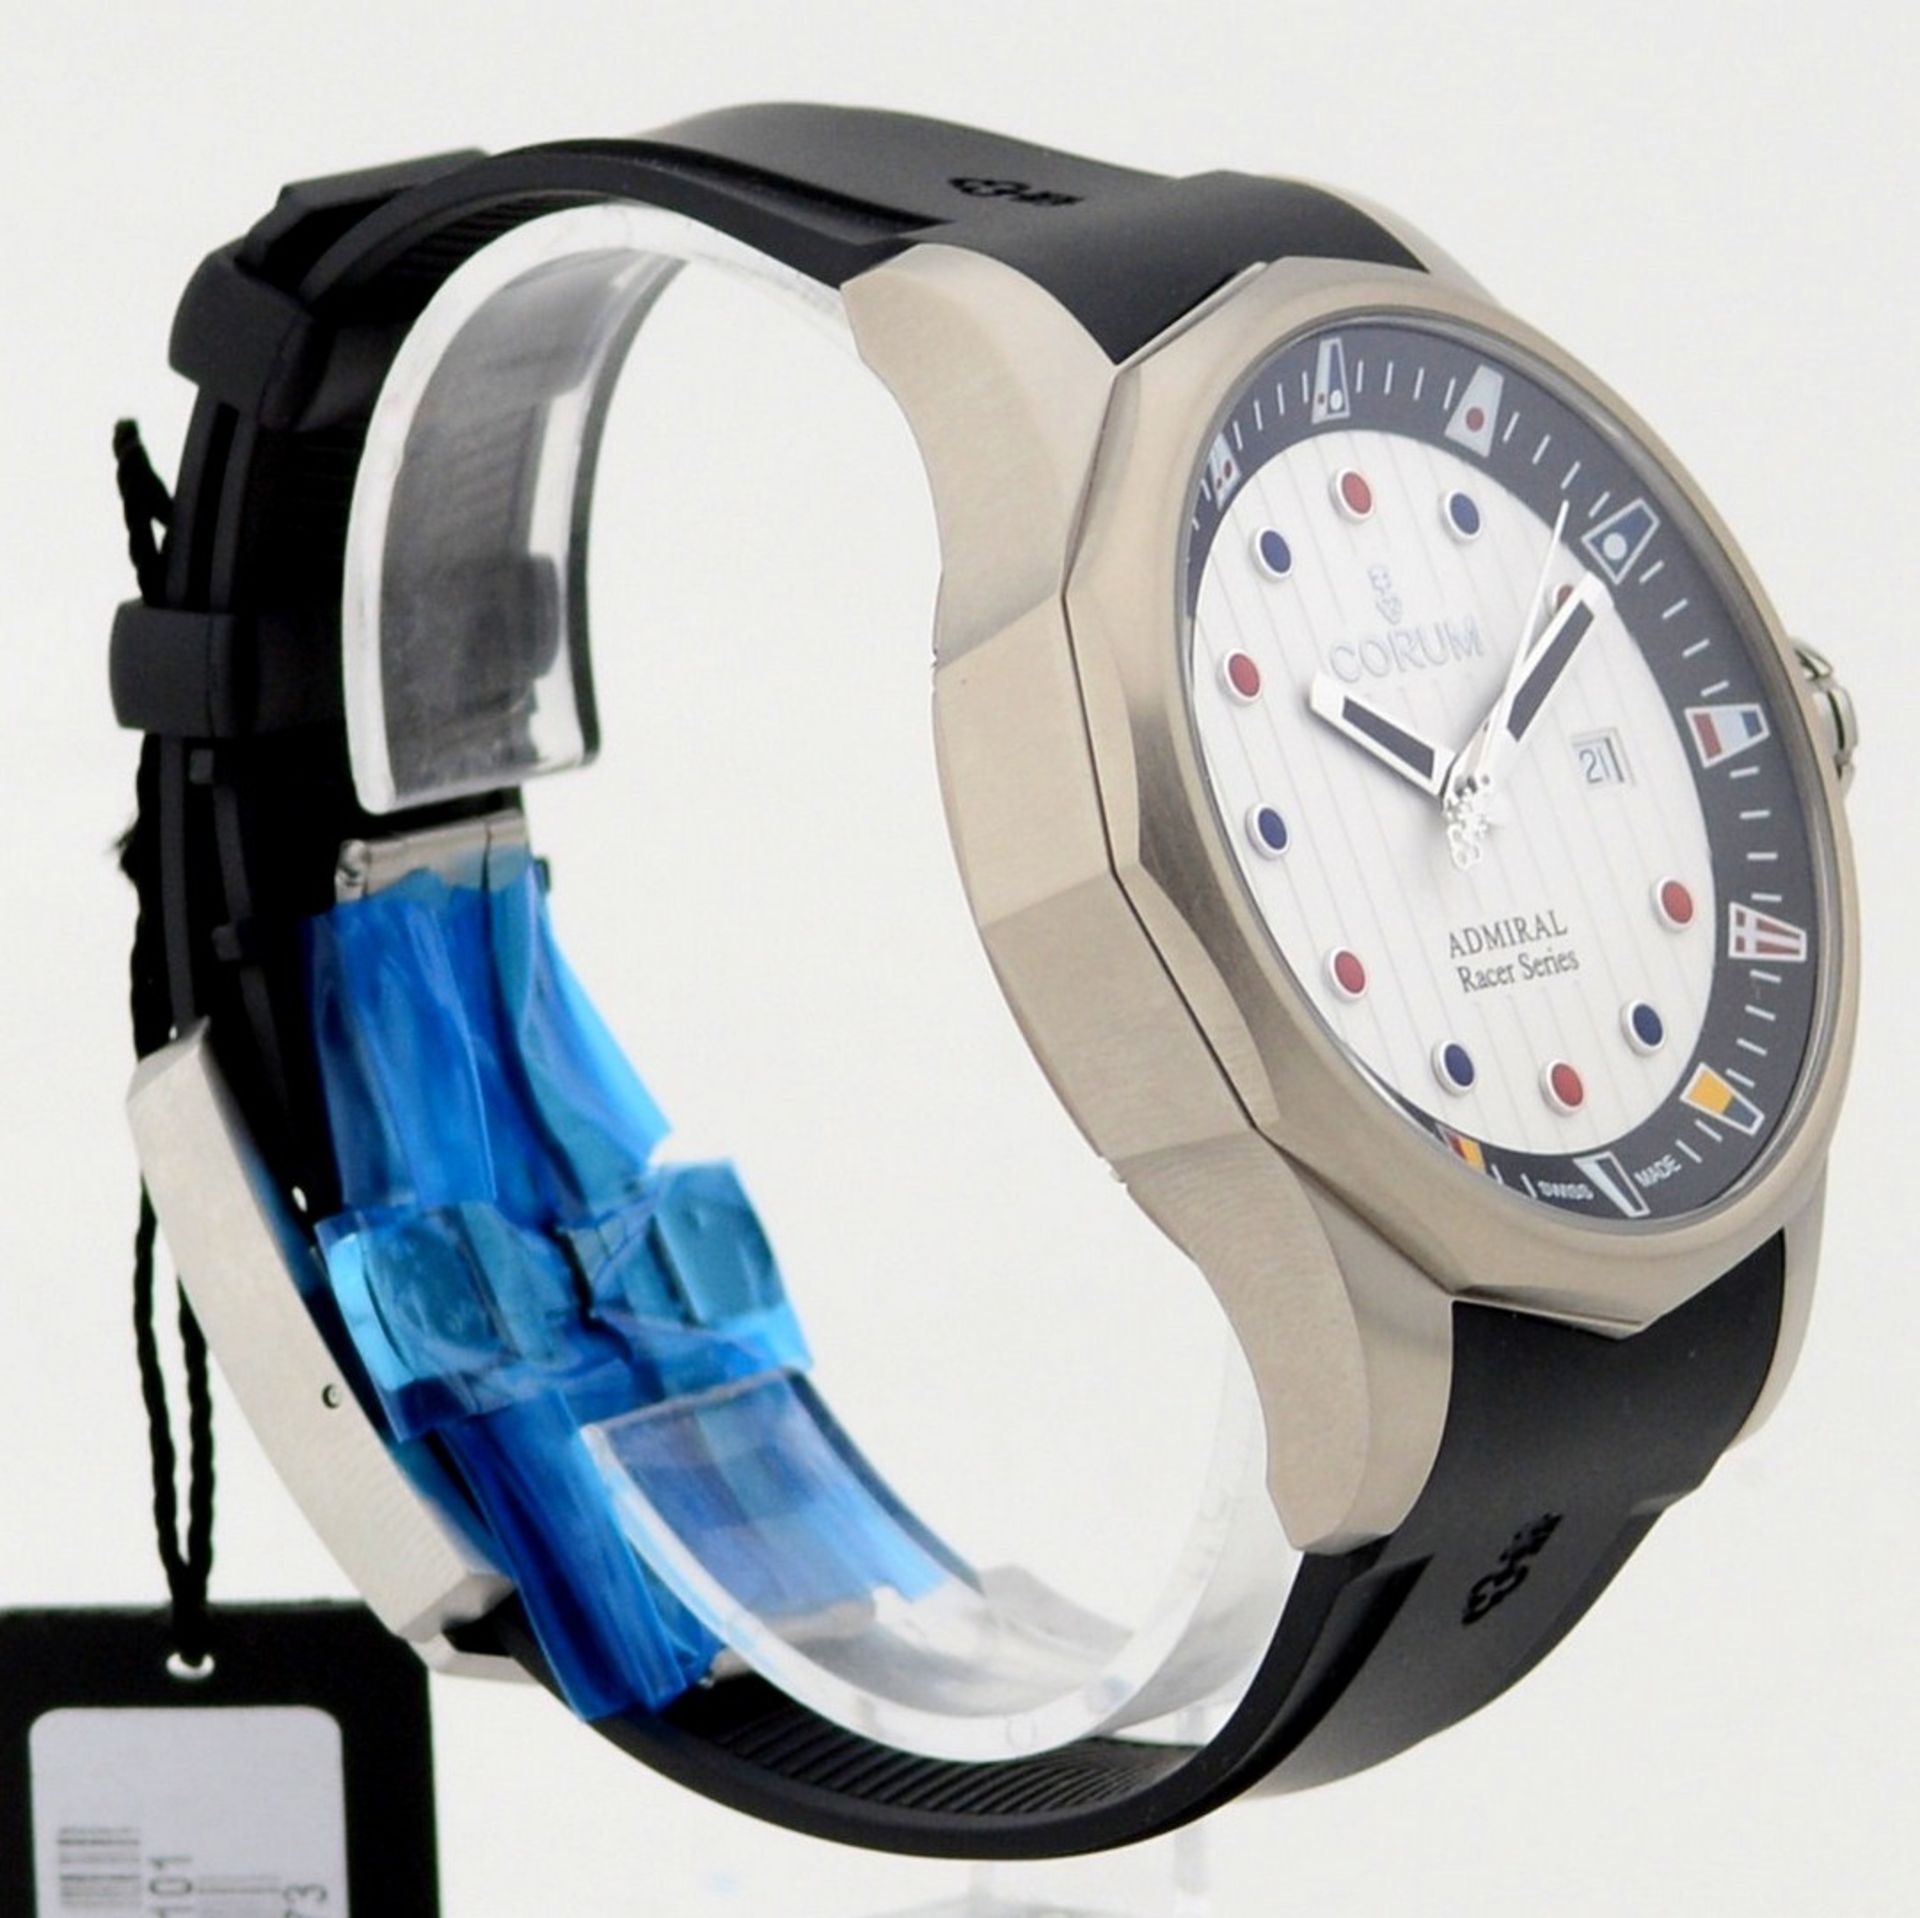 Corum / Admirals Cup Racer (Unworn) - Gentlmen's Steel Wrist Watch - Image 3 of 7